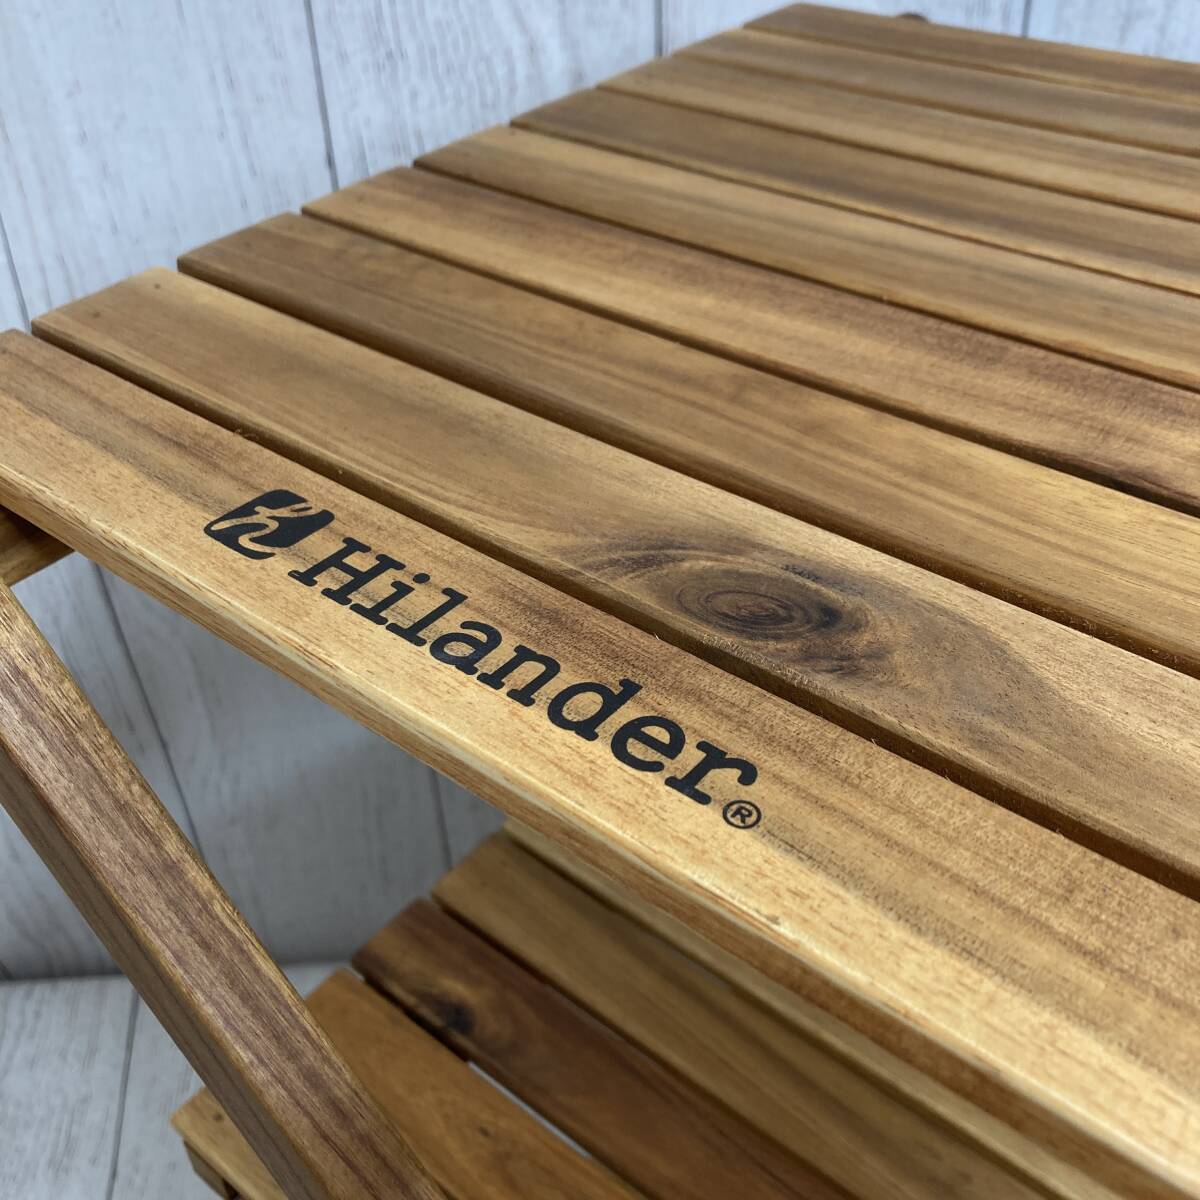 【新品未開封】Hilander(ハイランダー) ウッドラック 3段 専用ケース付き 木製ラック 425 HCTT-001 /Y21548-V3_画像5